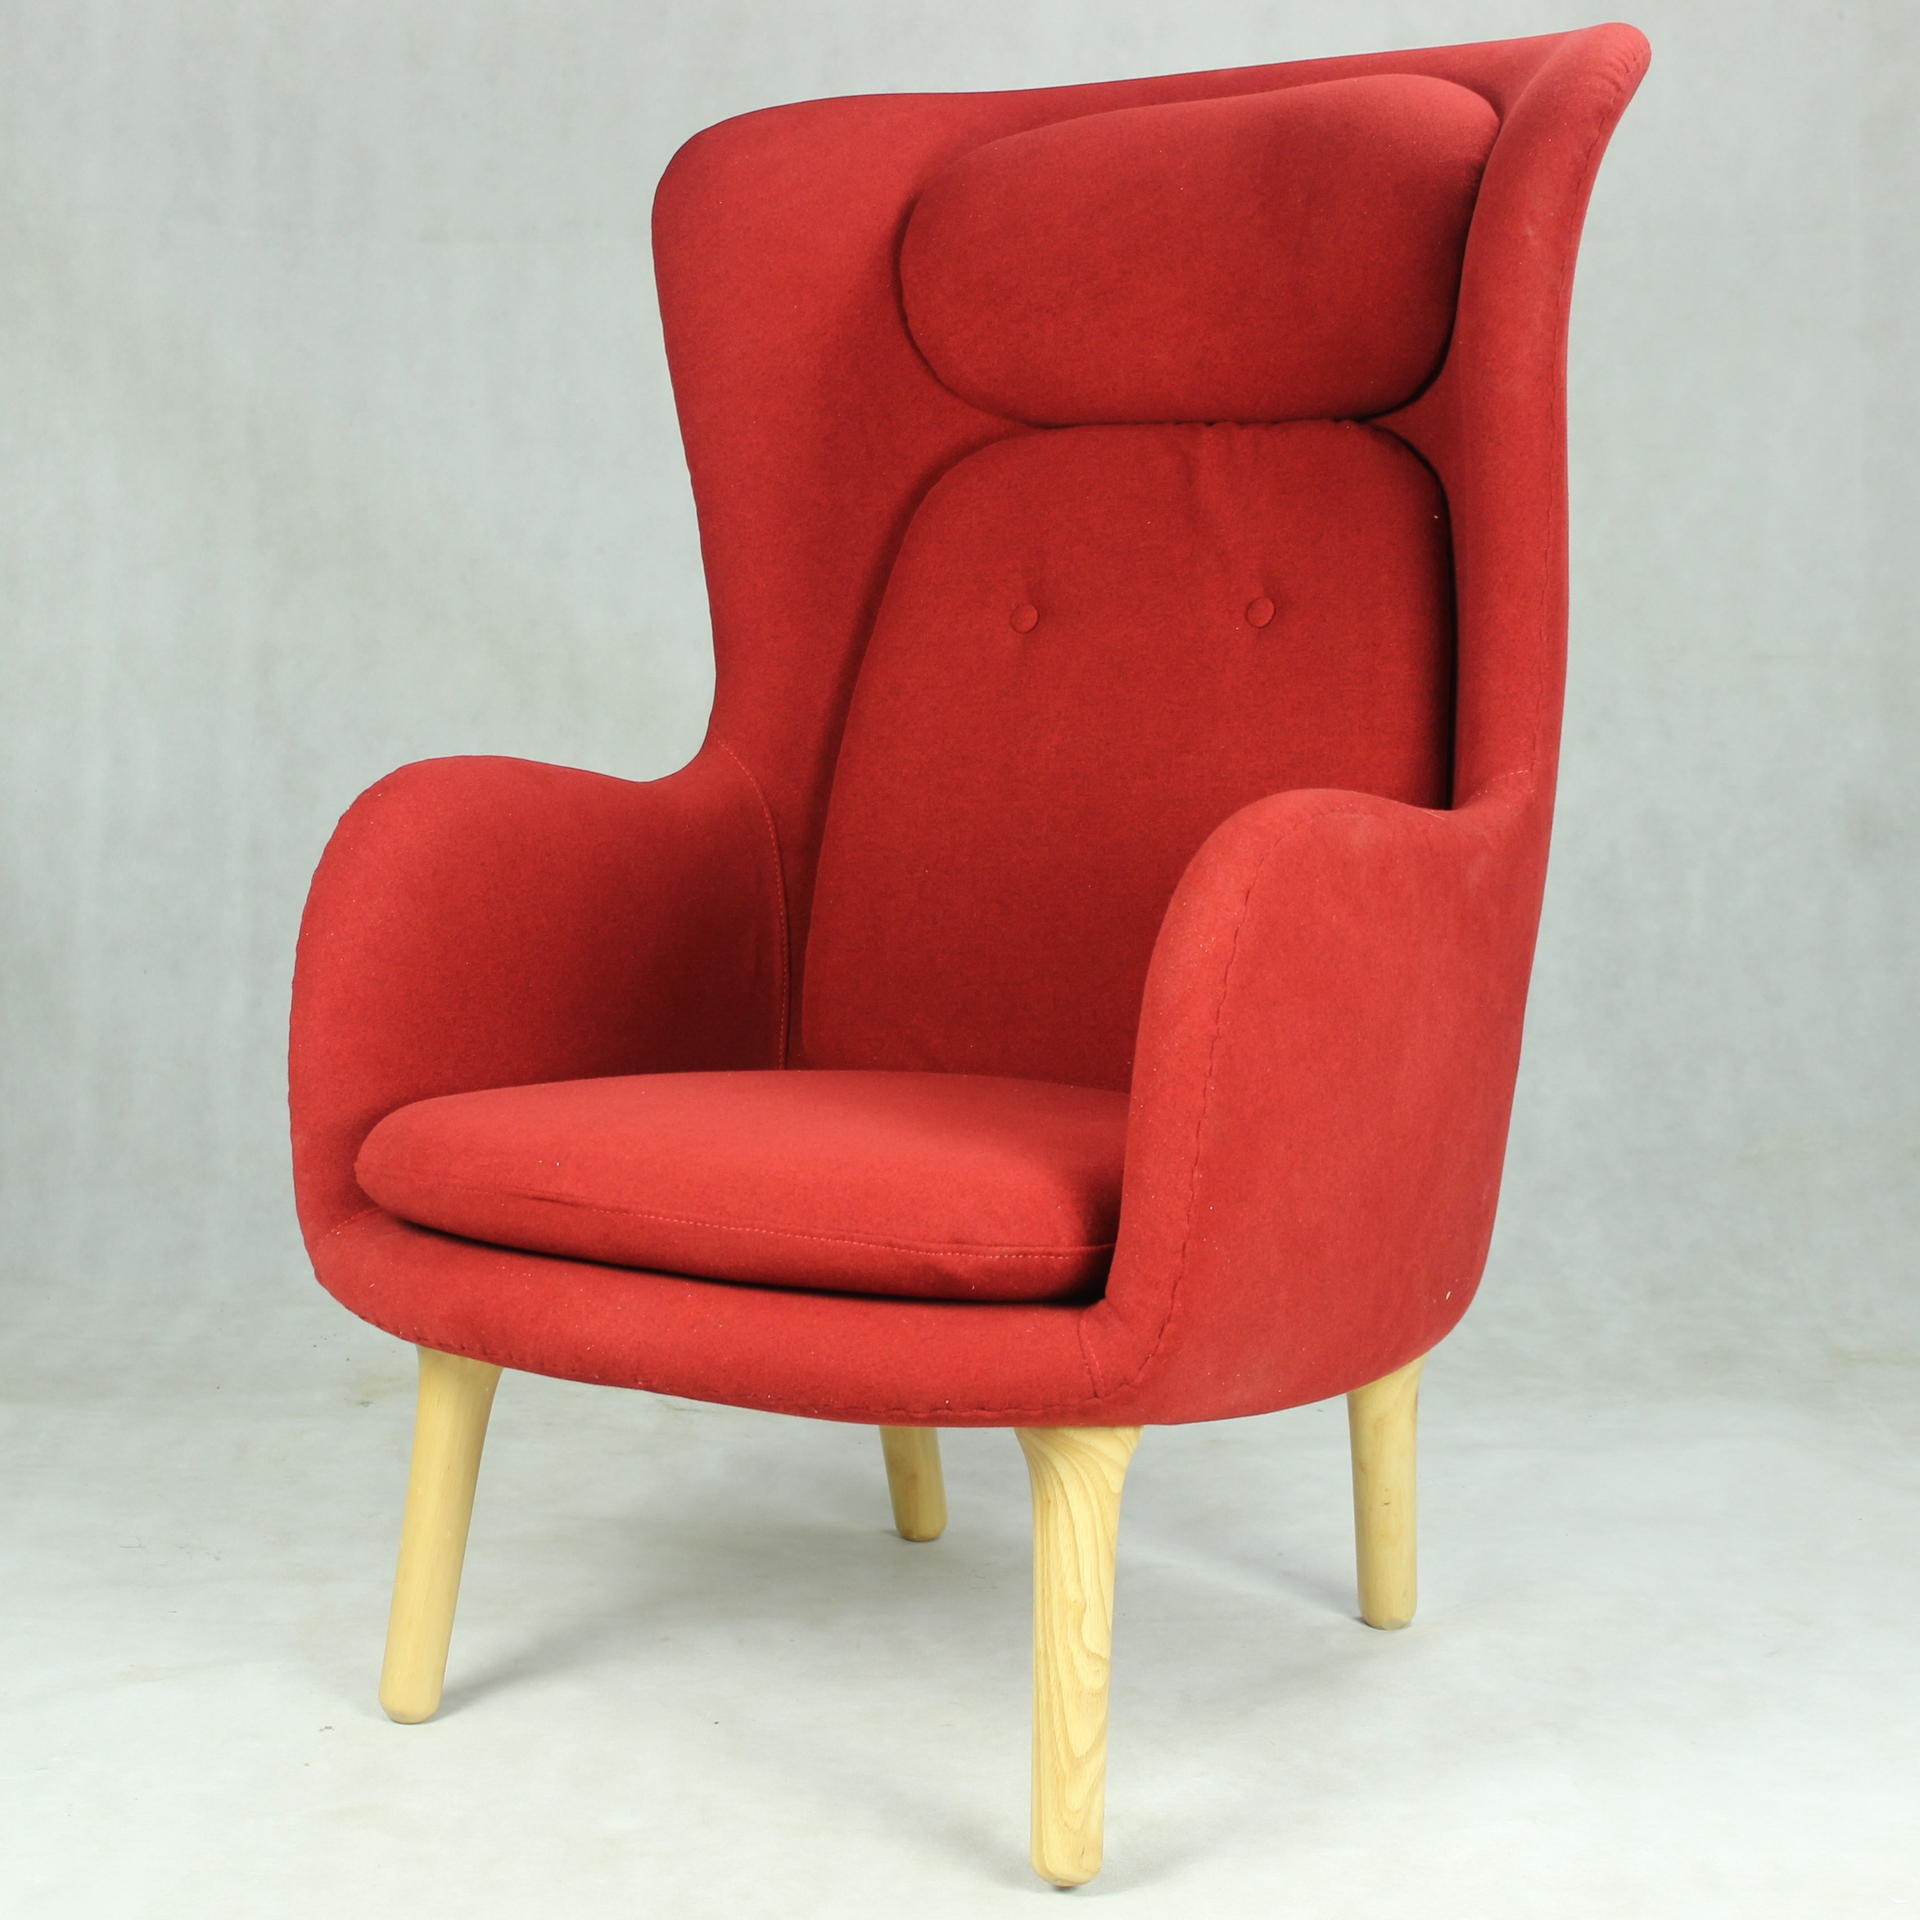 深圳单人沙发椅 布艺休闲椅 卧室沙发椅 现代简约沙发椅 网红沙发椅 咖啡厅奶茶店桌椅